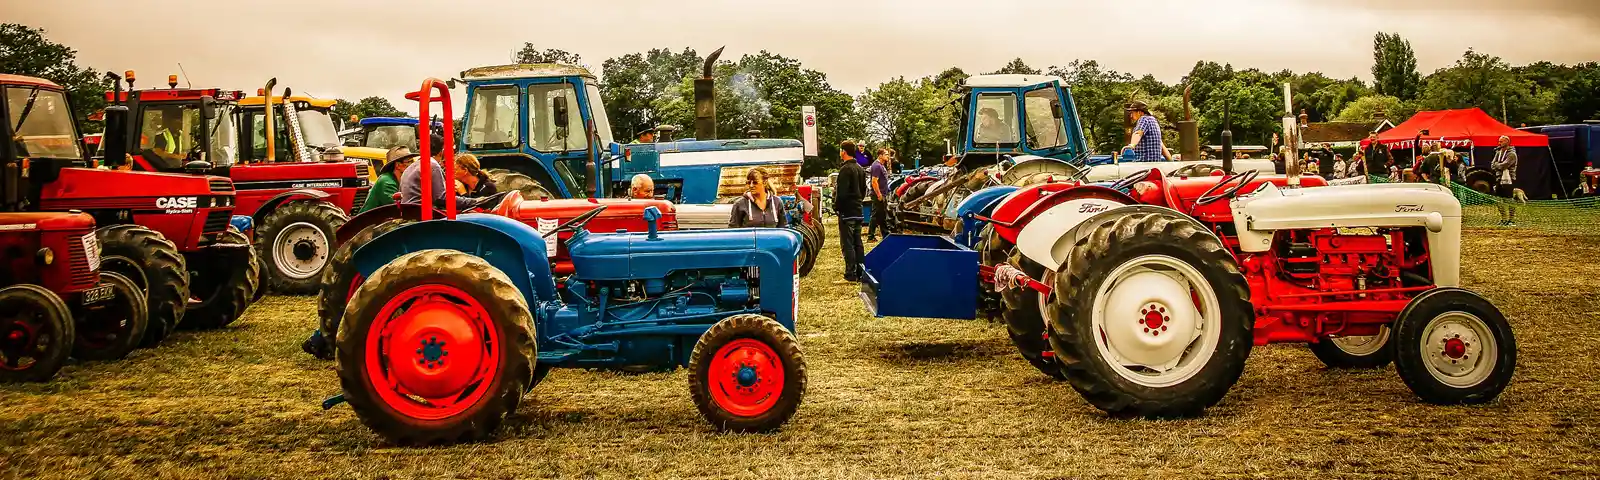 Biddenden Tractorfest tractors 2019 DavidCL.jpg